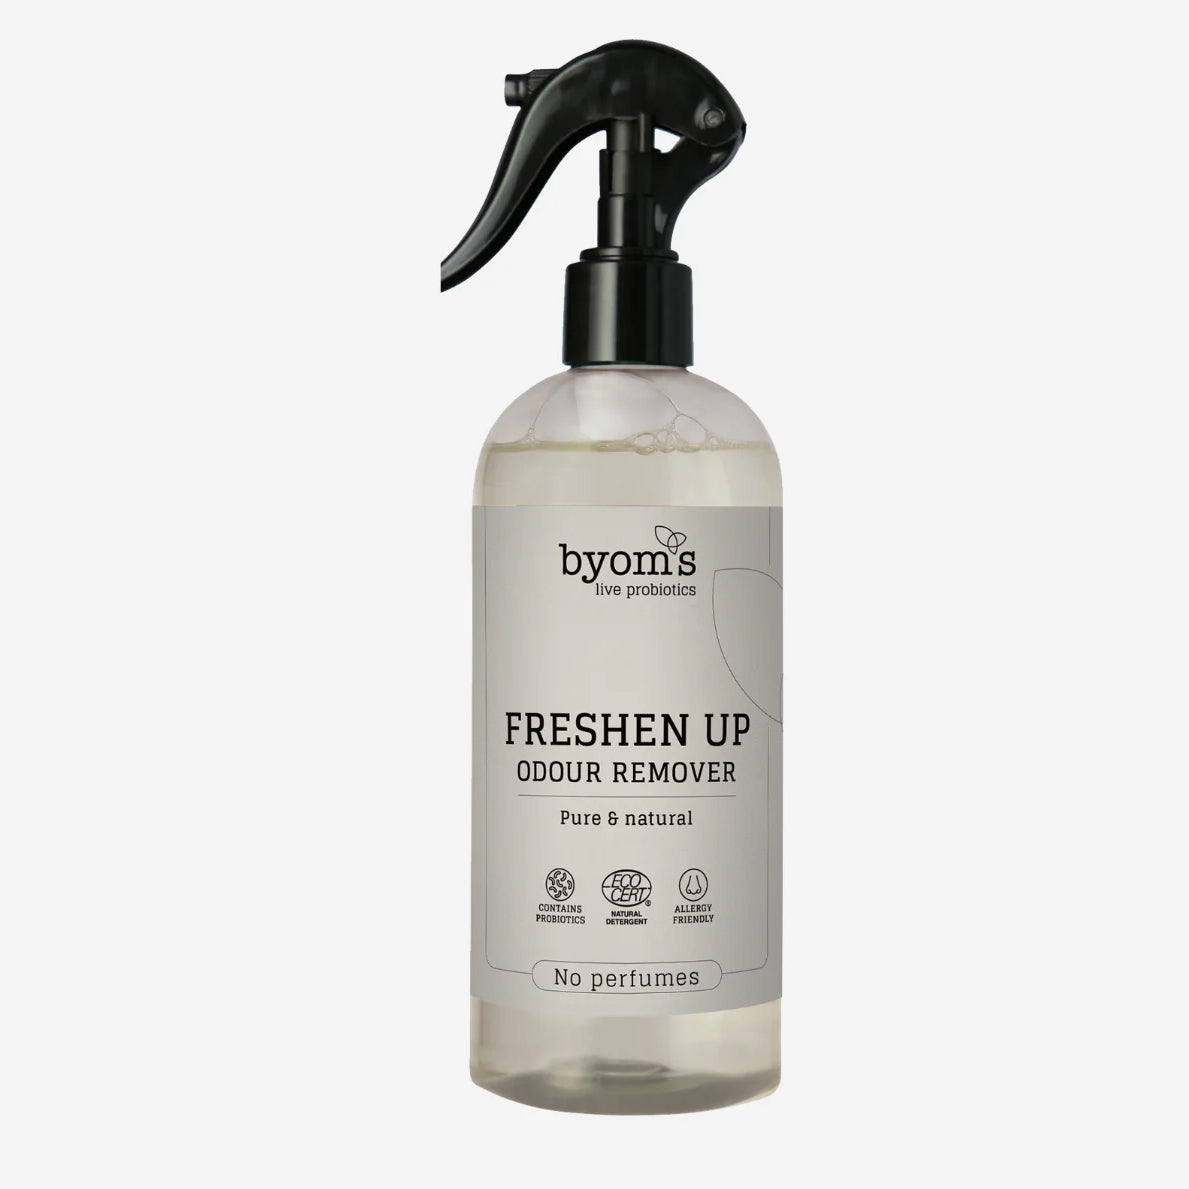 Billede af Freshen Up Probiotic Odour Remover, No Perfumes, 400 ml.